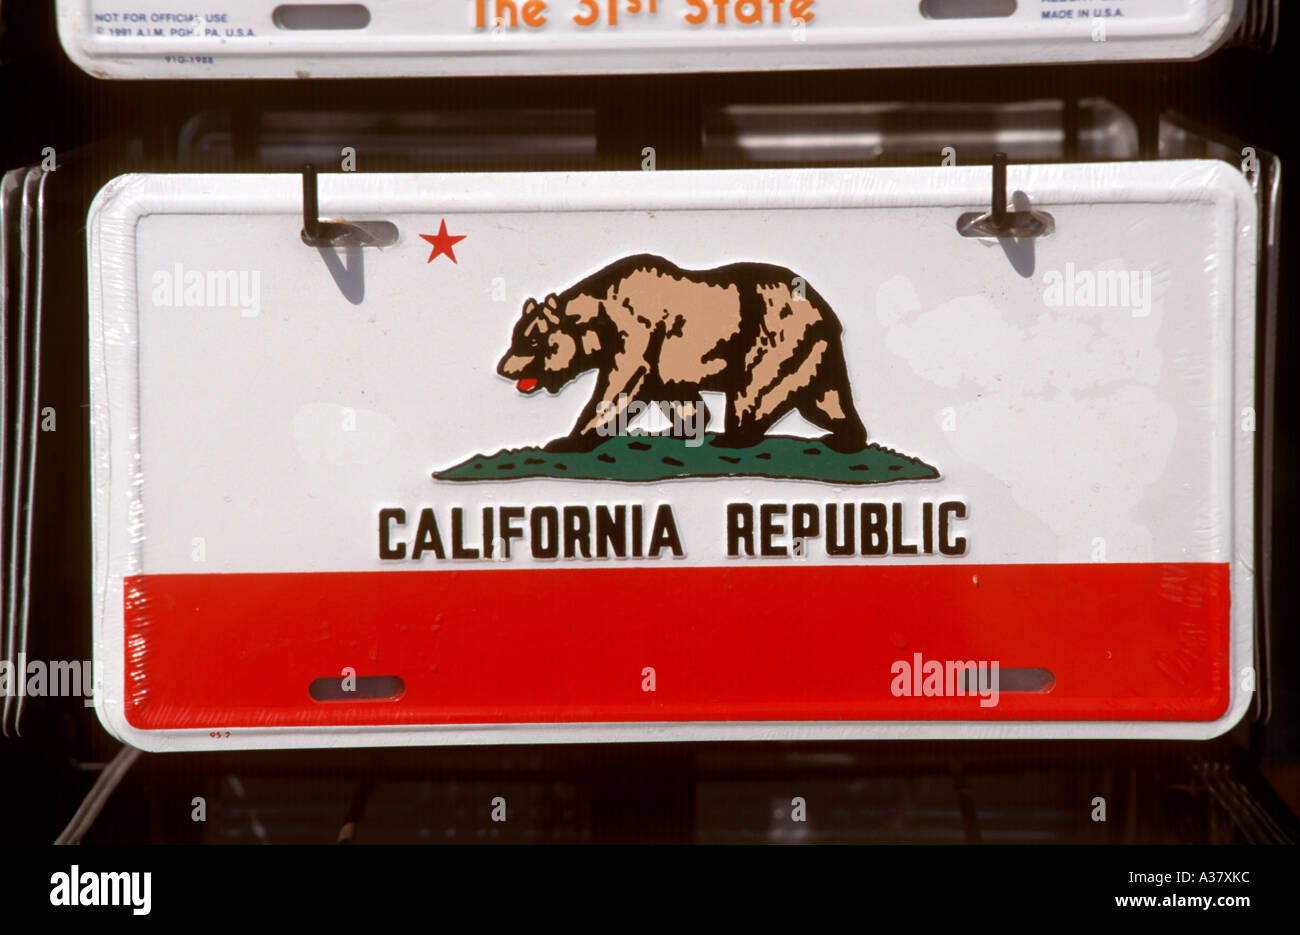 République de Californie de plaque souvenir, Venice Beach, Los Angeles, Californie, USA Banque D'Images